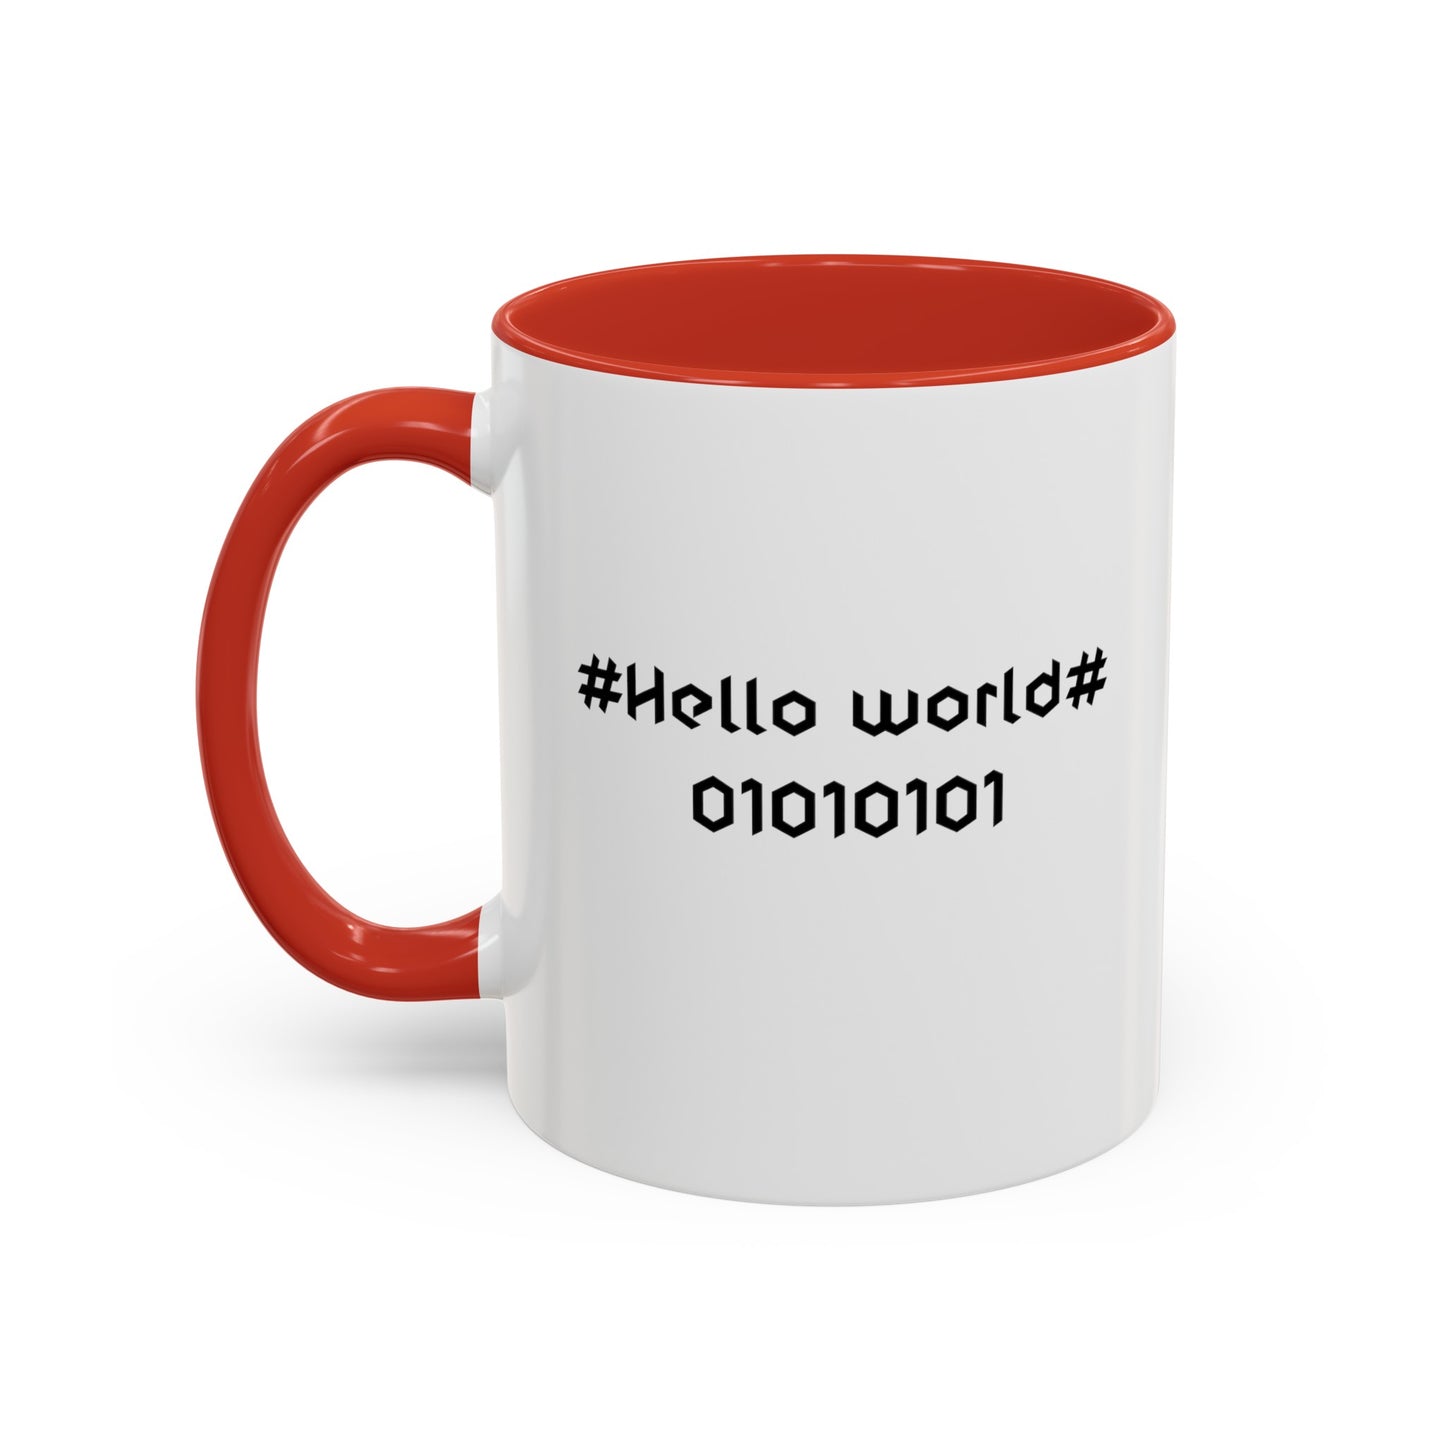 Programmer Coffee Mug, Hello world mug, two toned mug